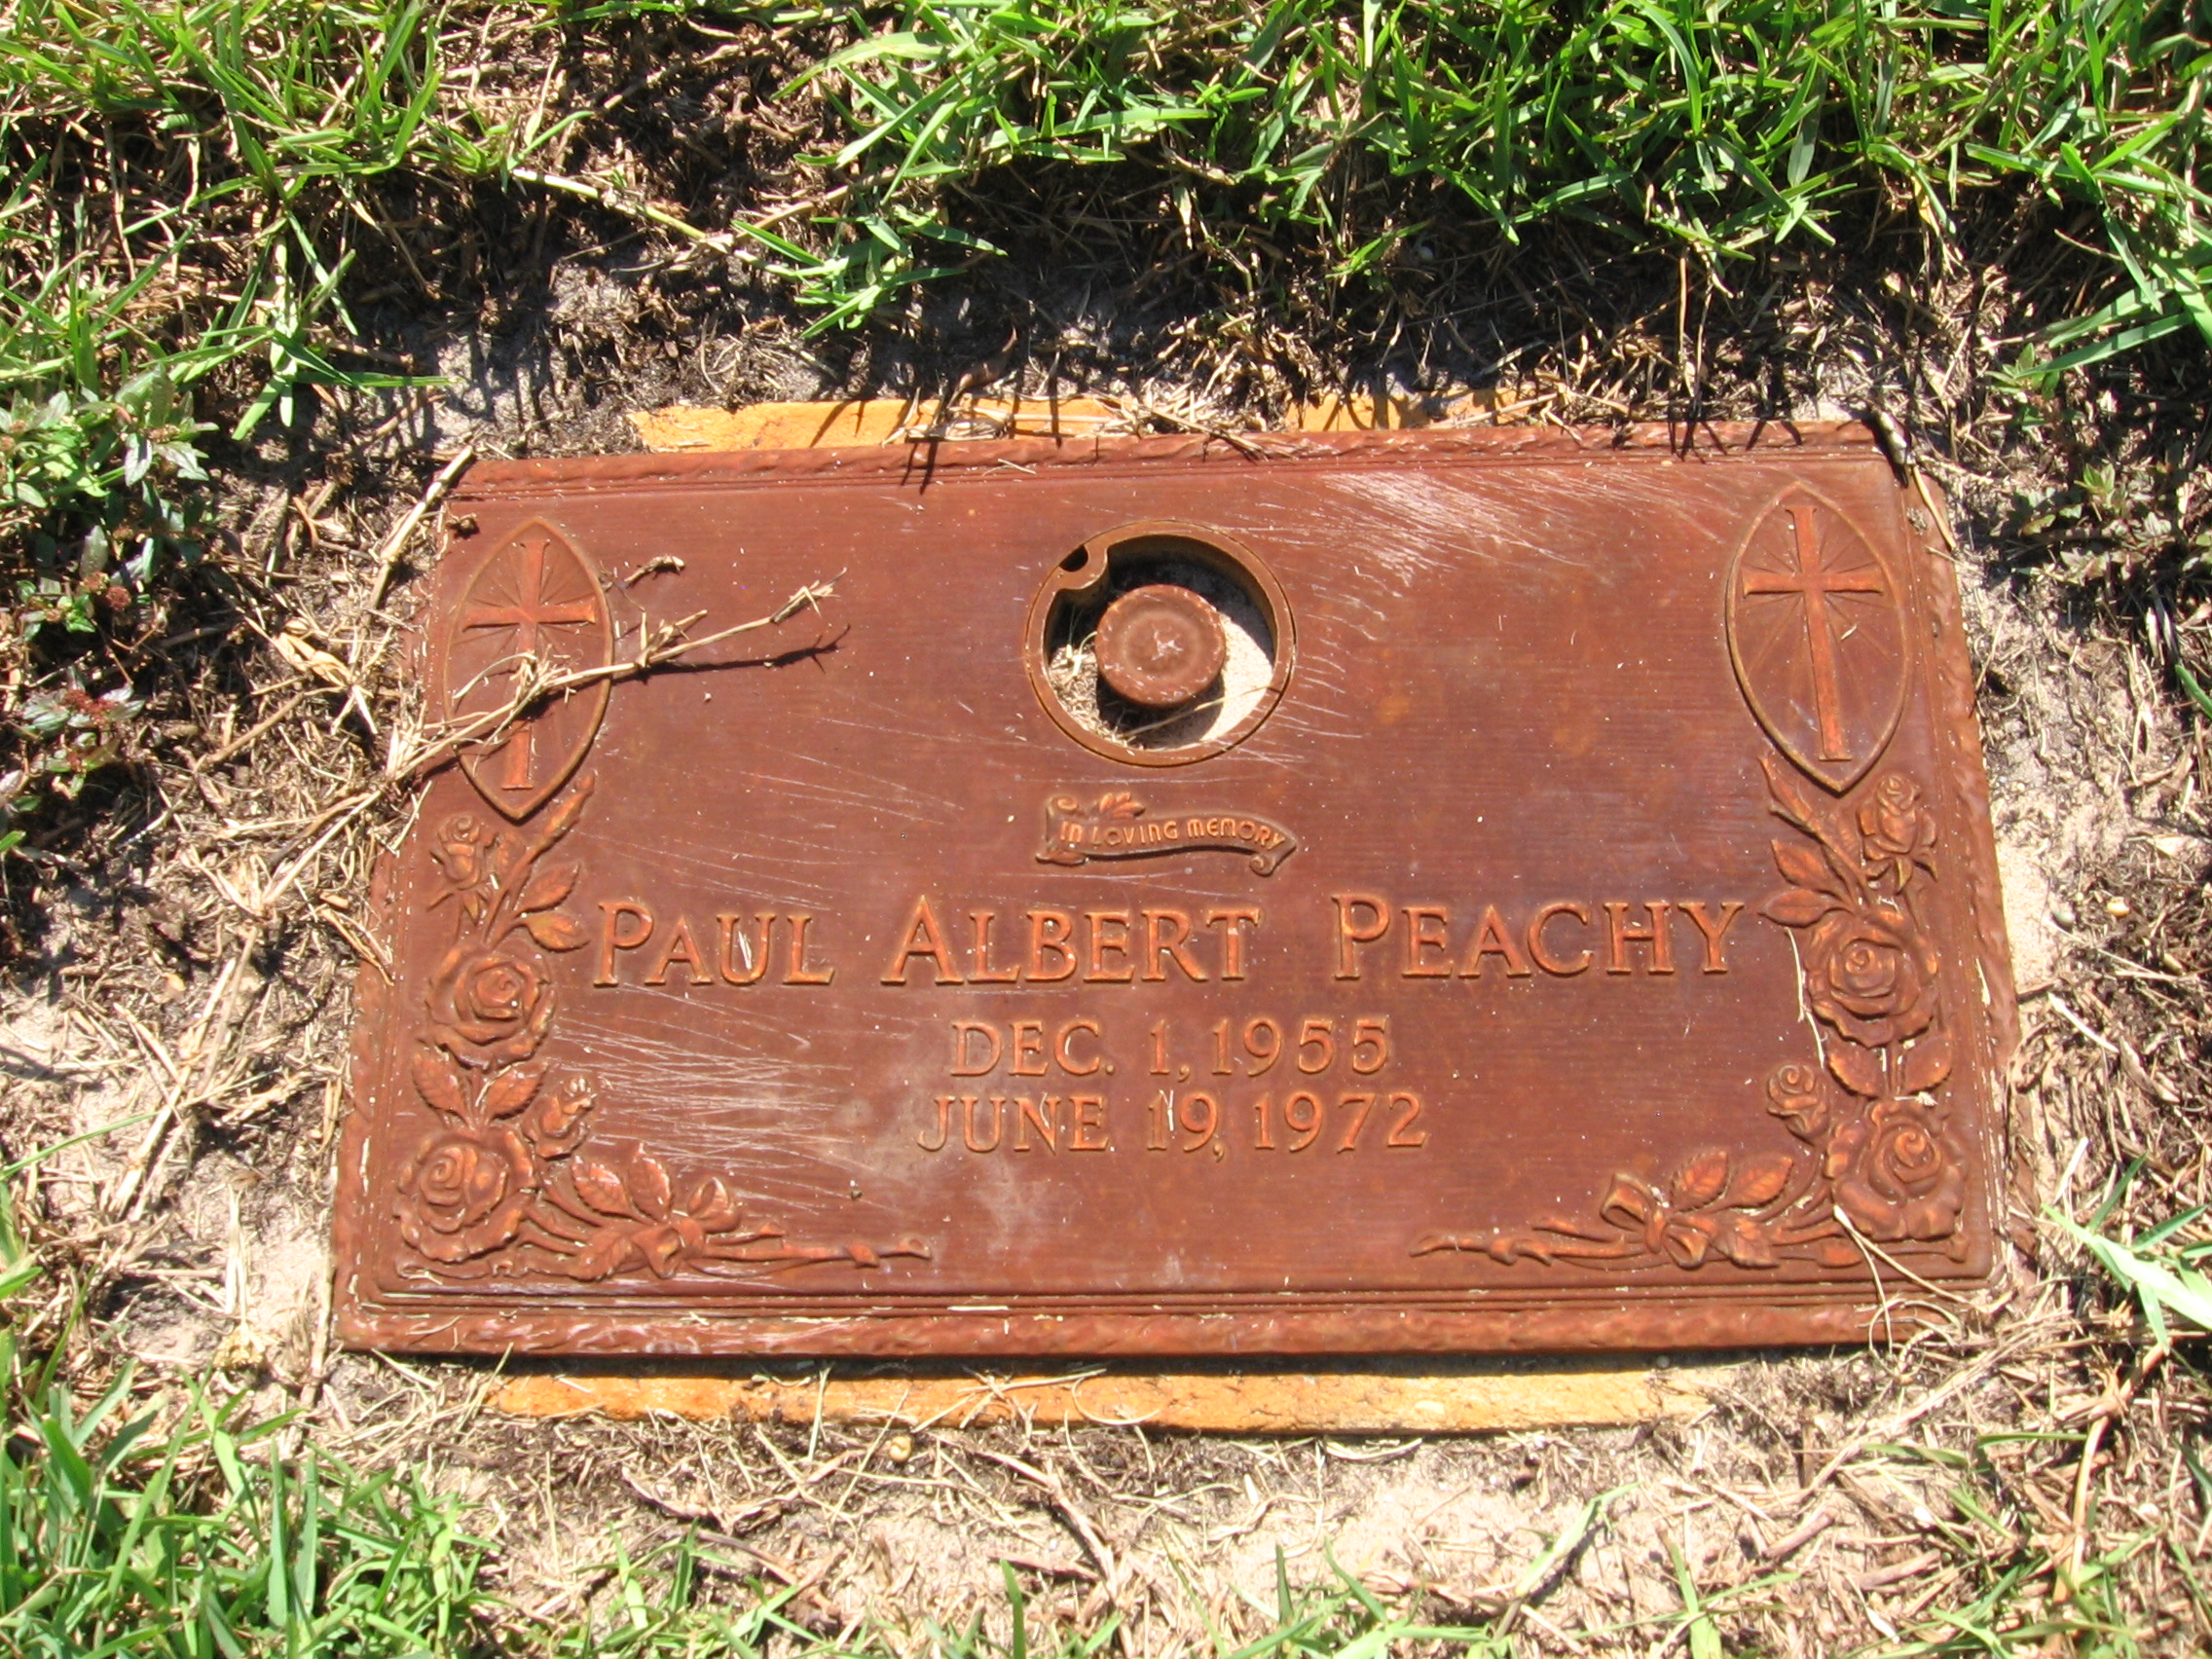 Paul Albert Peachy